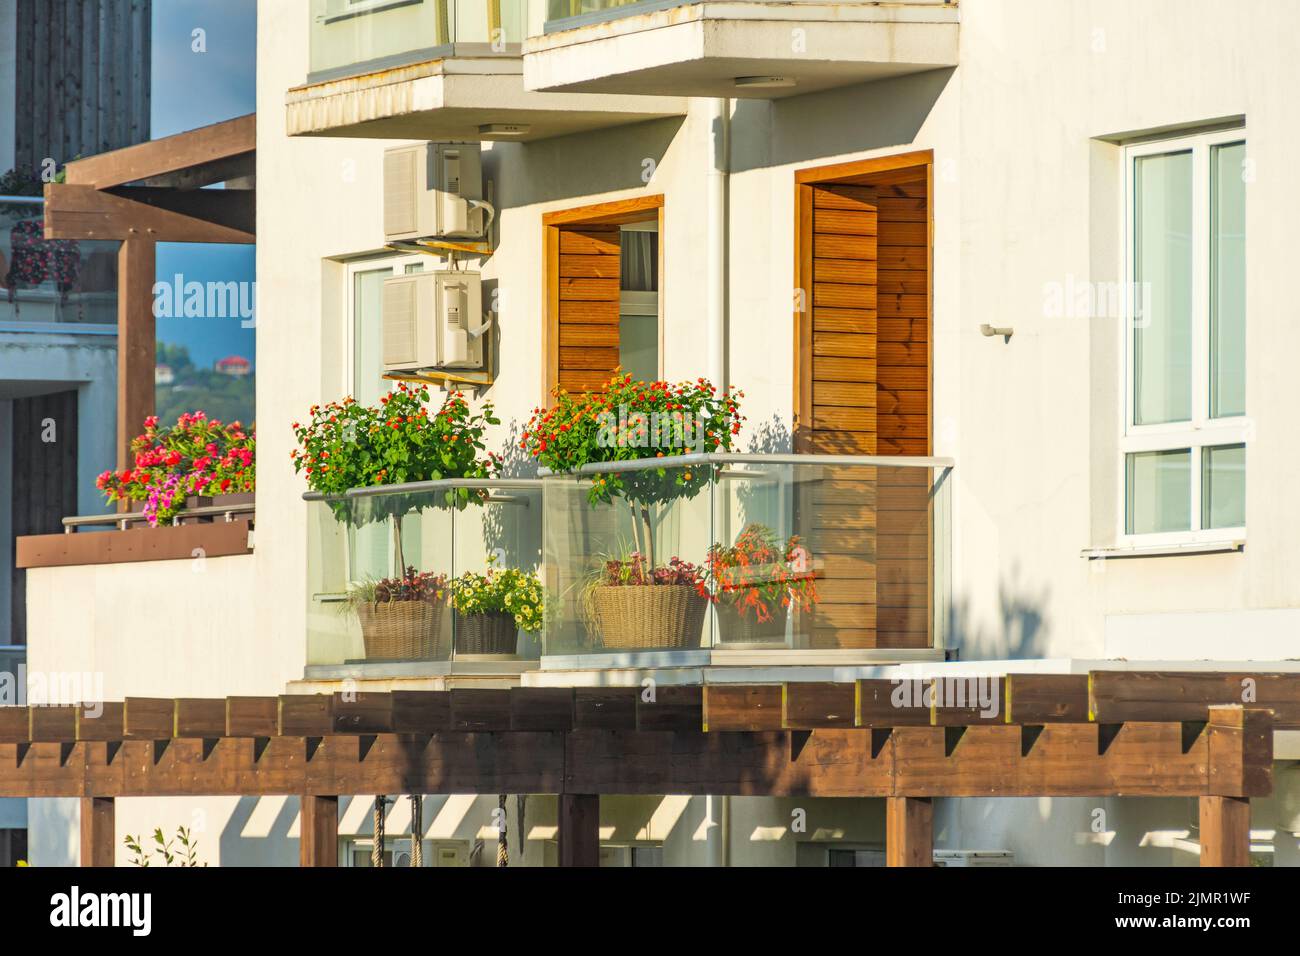 Terraza con plantas y árboles en flor en el balcón iluminado por el sol con elementos de decoración de madera Foto de stock